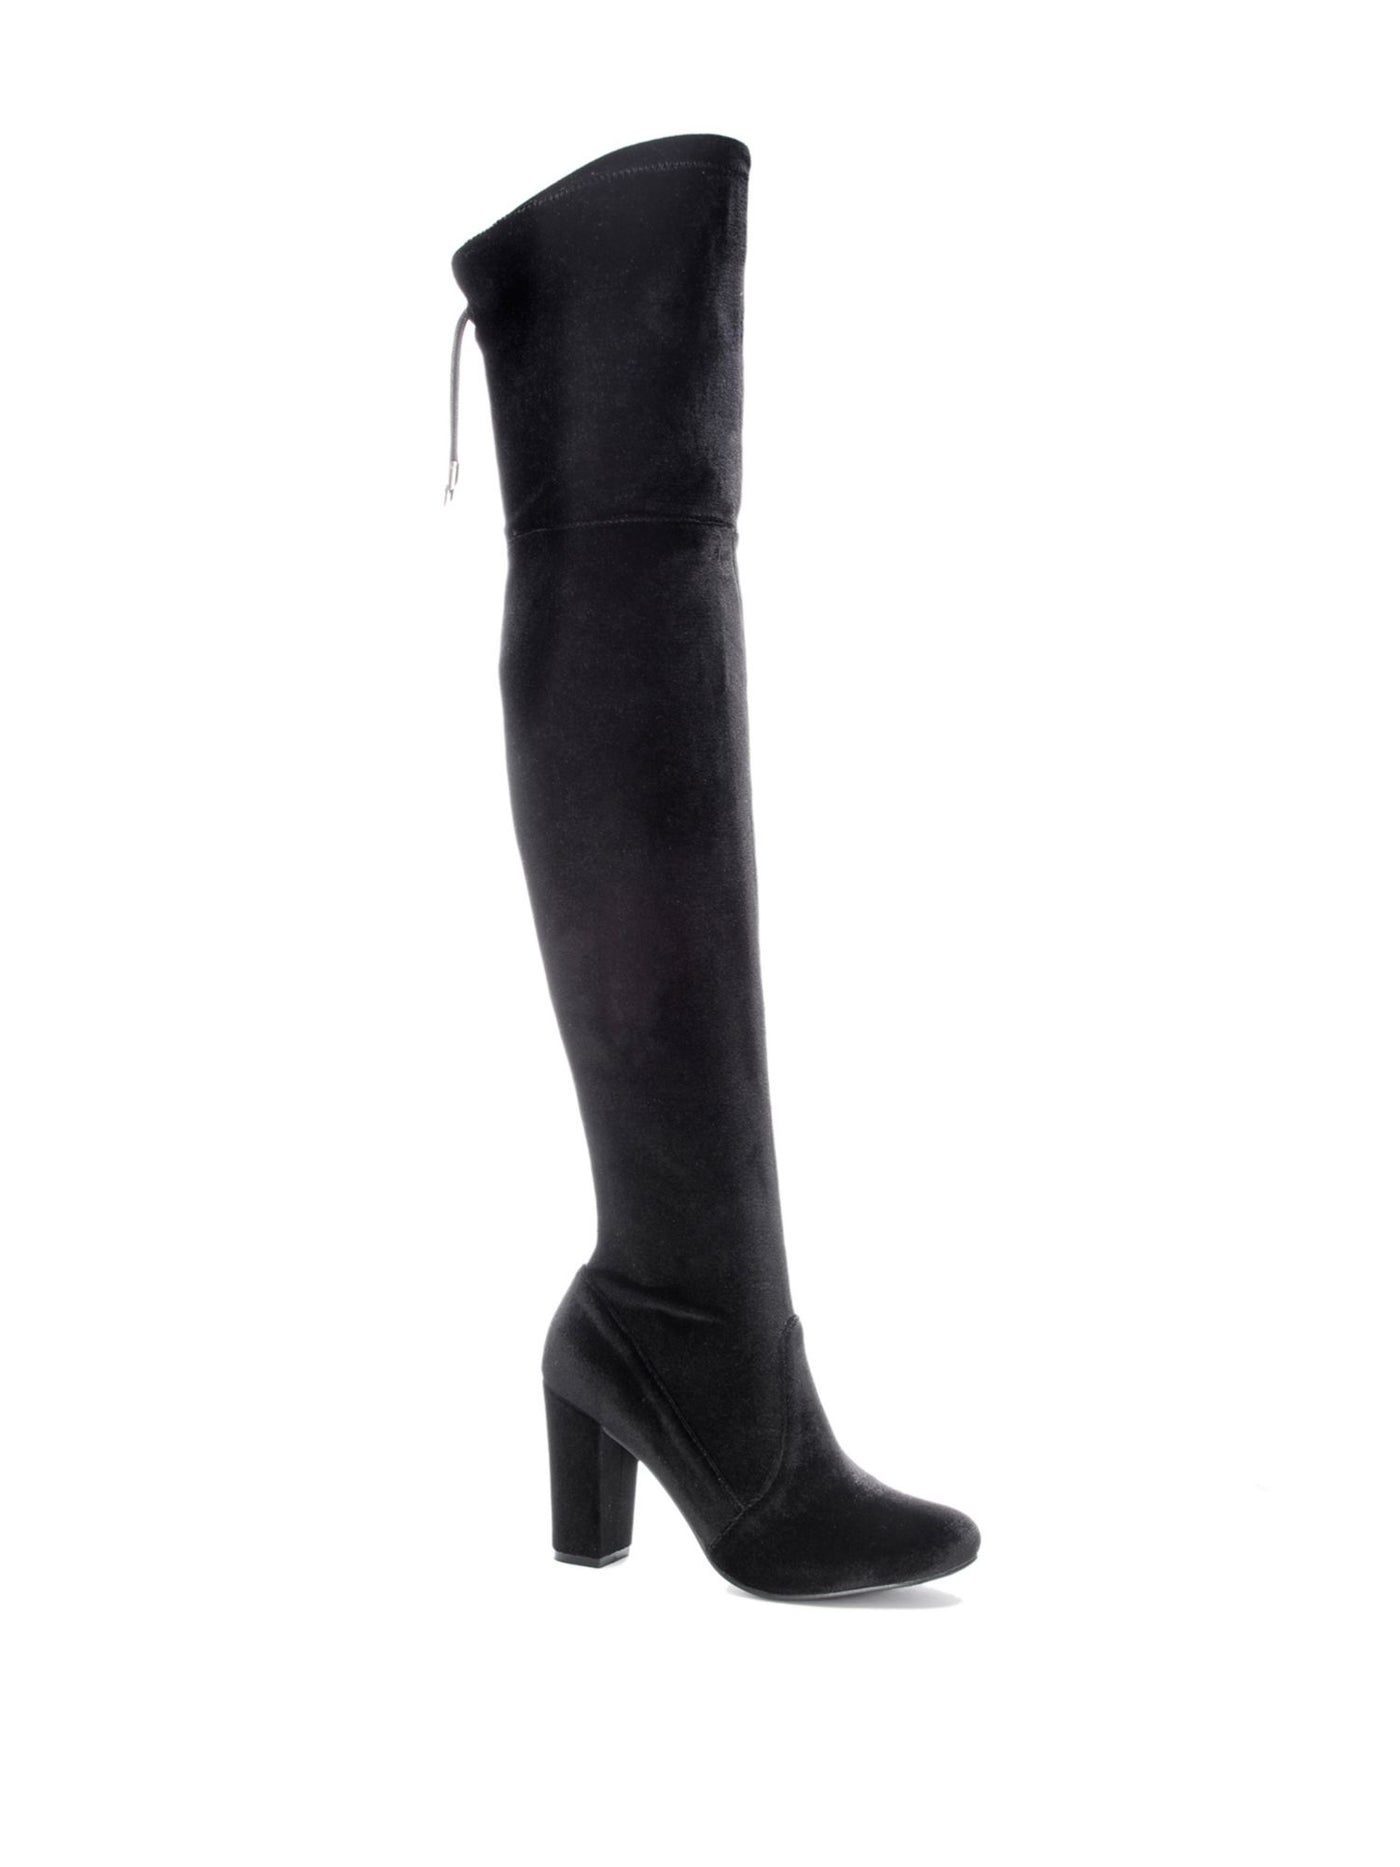 CHINESE LAUNDRY Womens Black Tie Velvet Fabric Comfort Bree Round Toe Block Heel Zip-Up Dress Boots 7.5 M